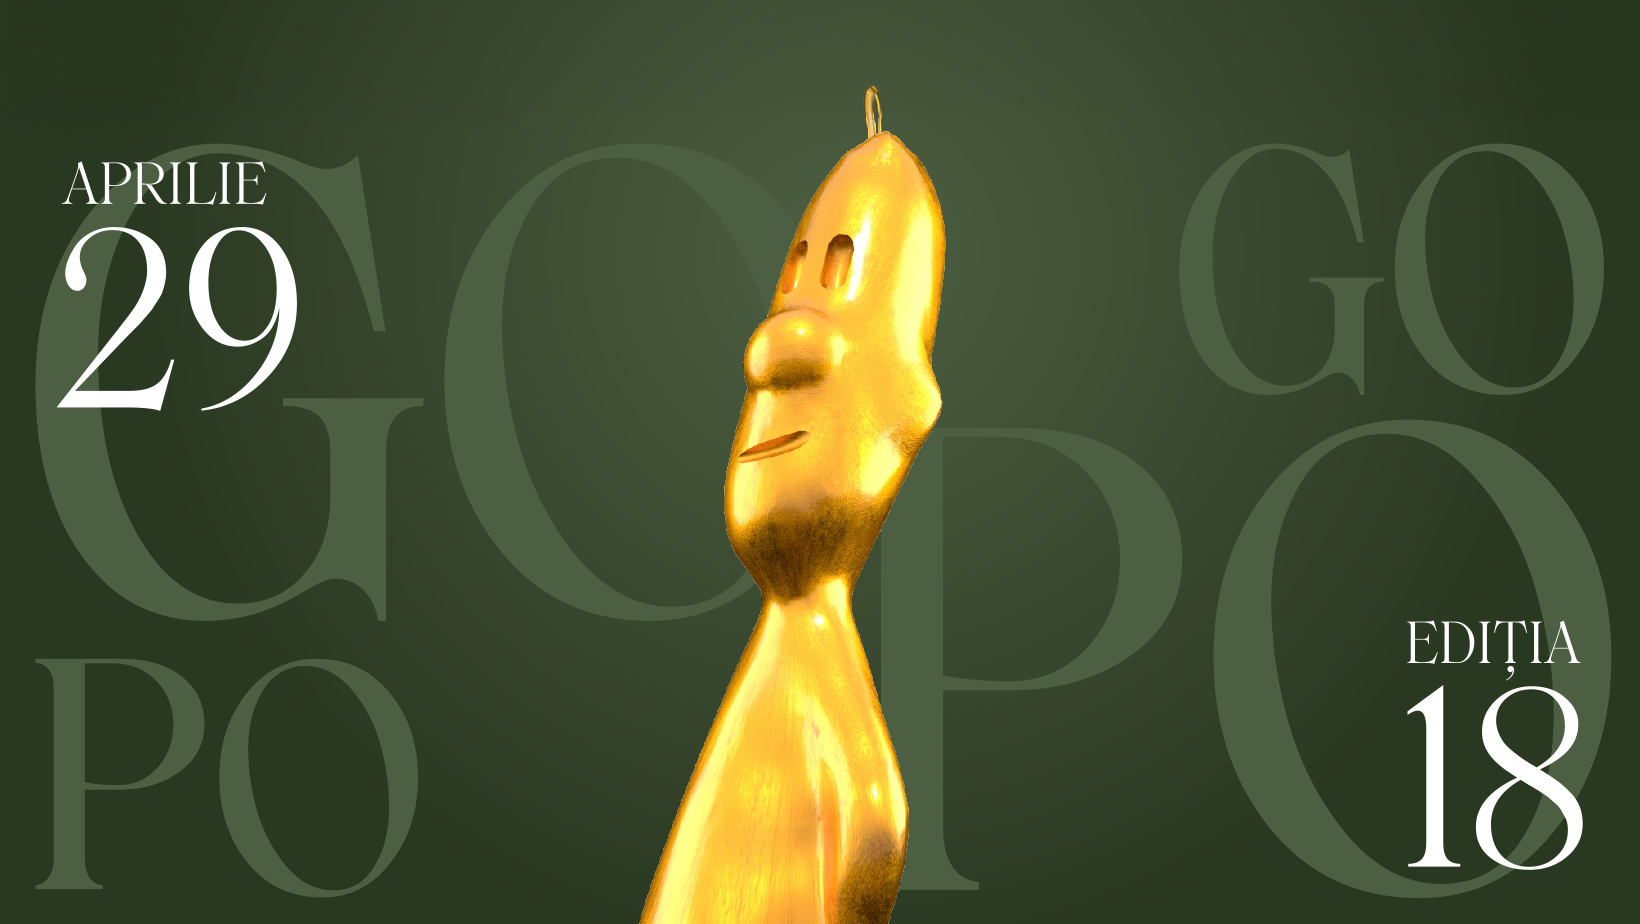 Premiile Gopo sau Oscarurile de România